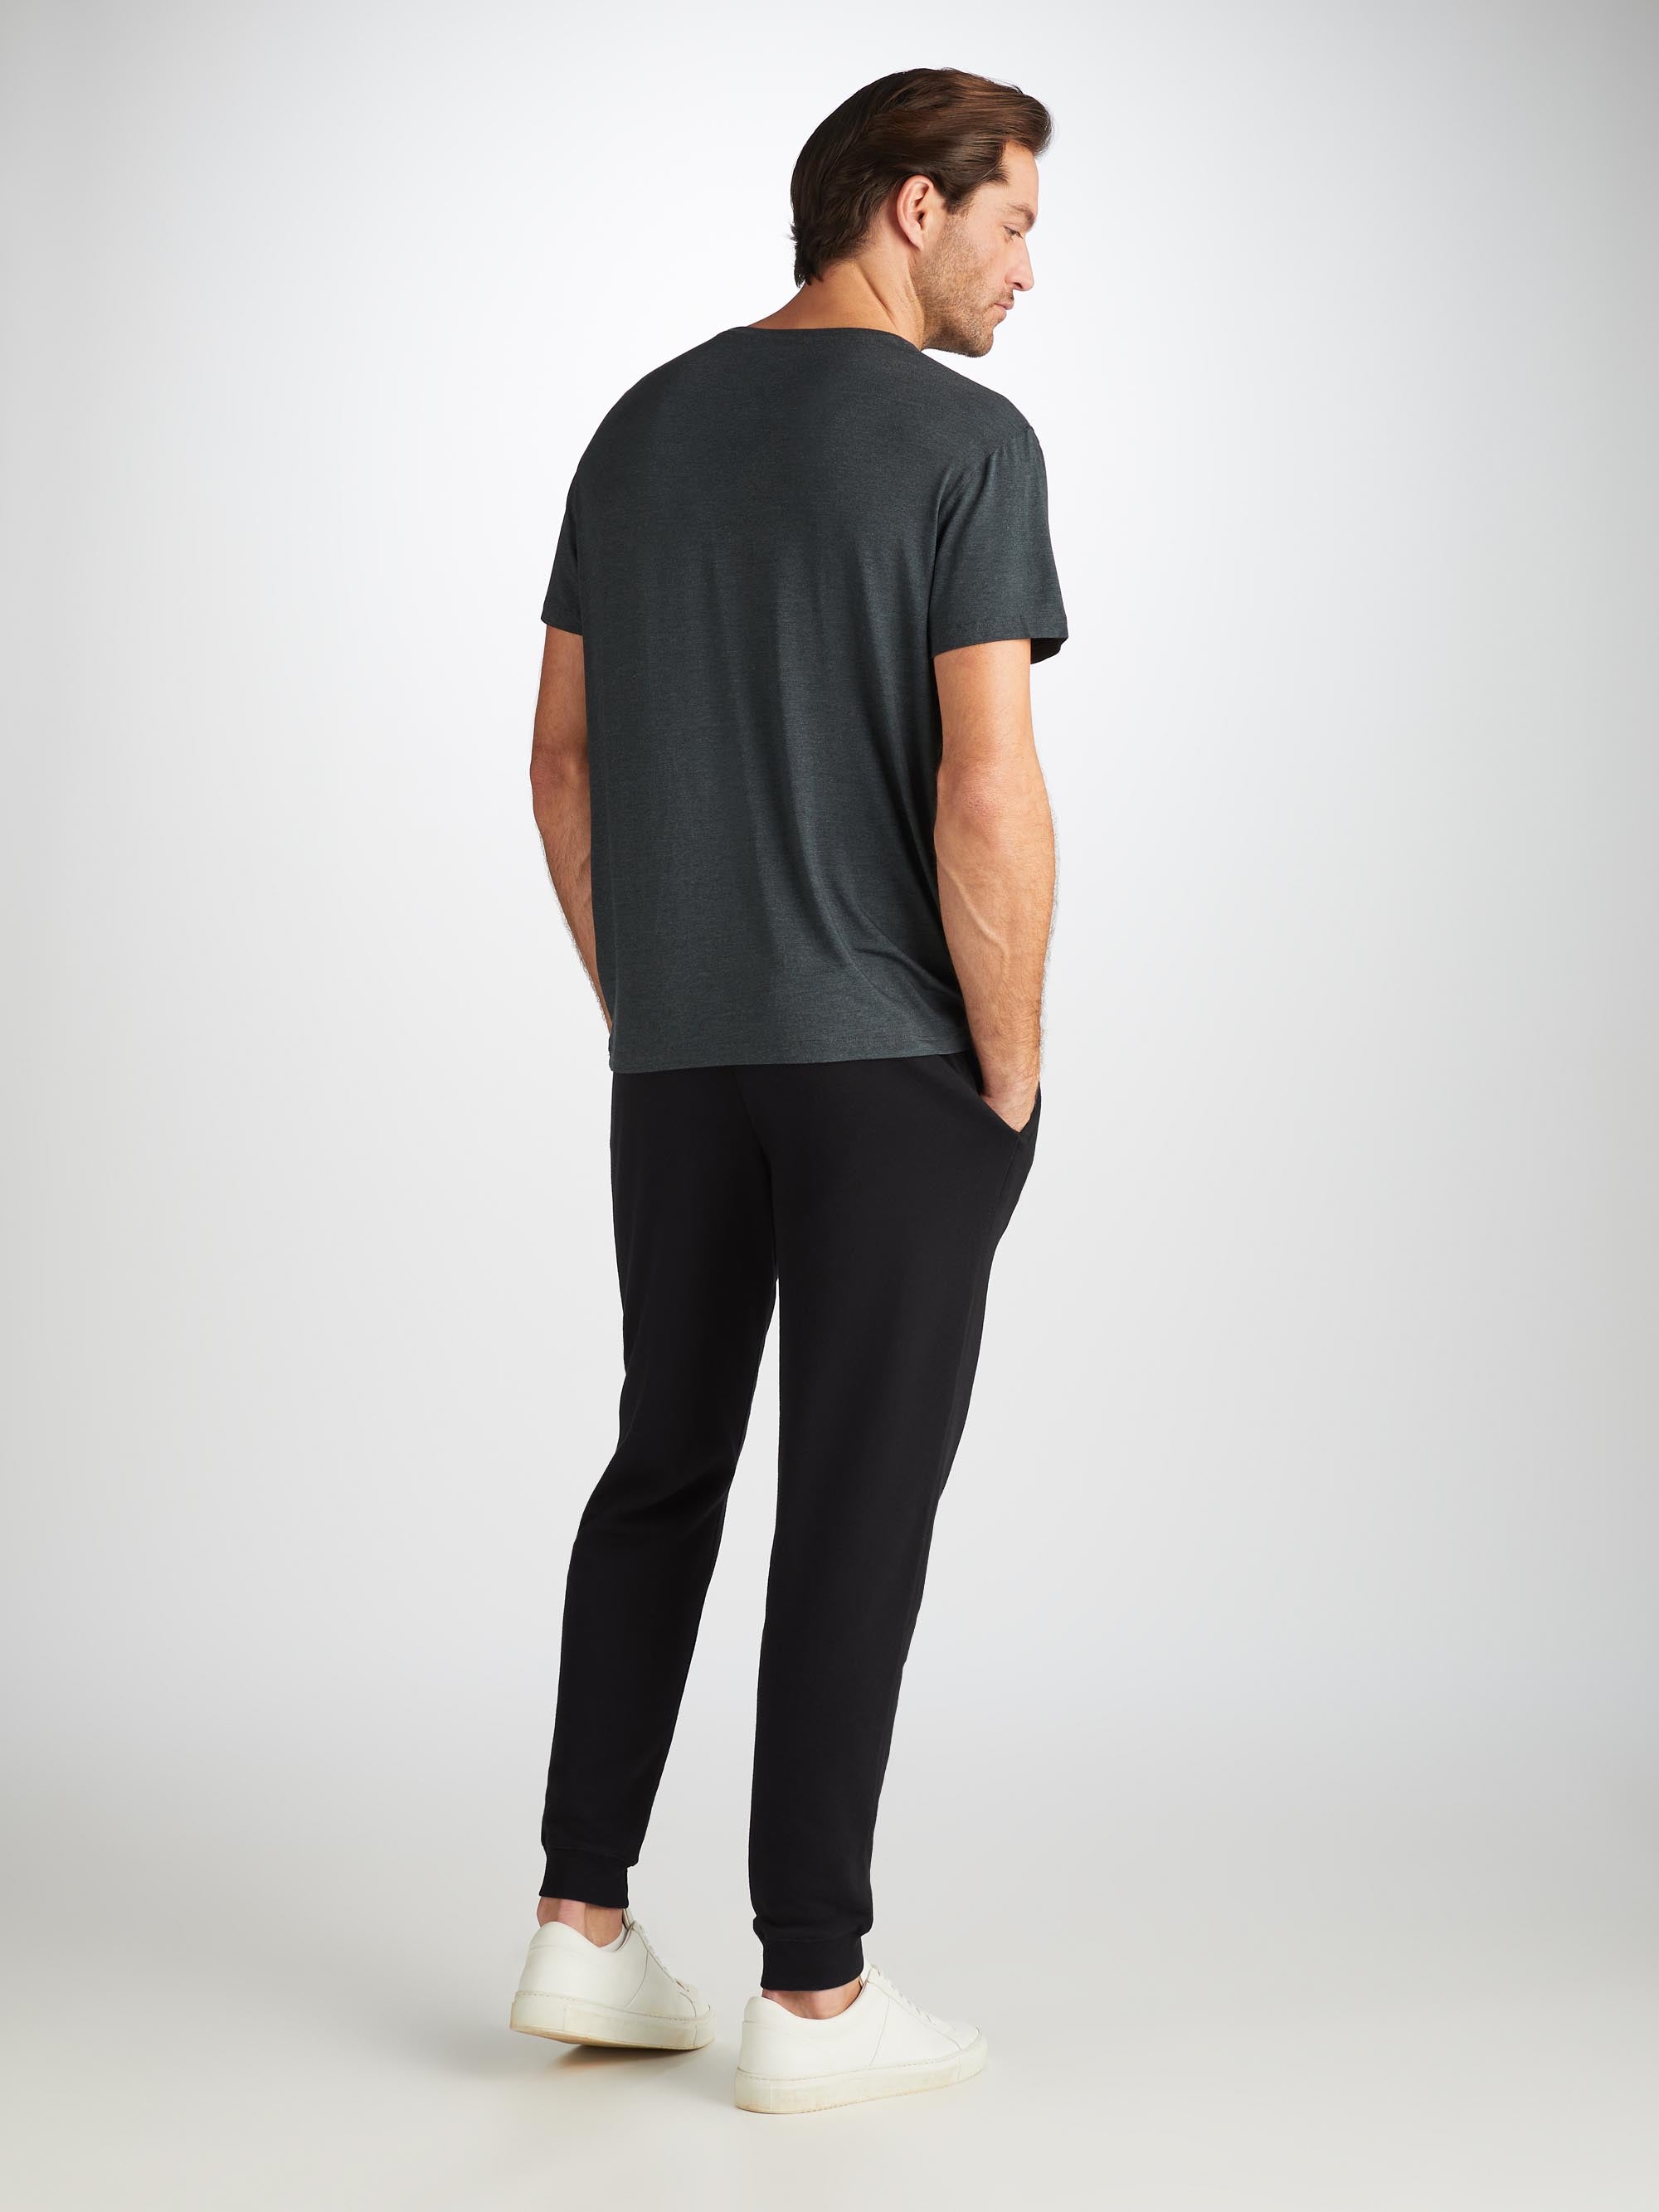 Men's Sweatpants Quinn Cotton Modal Black